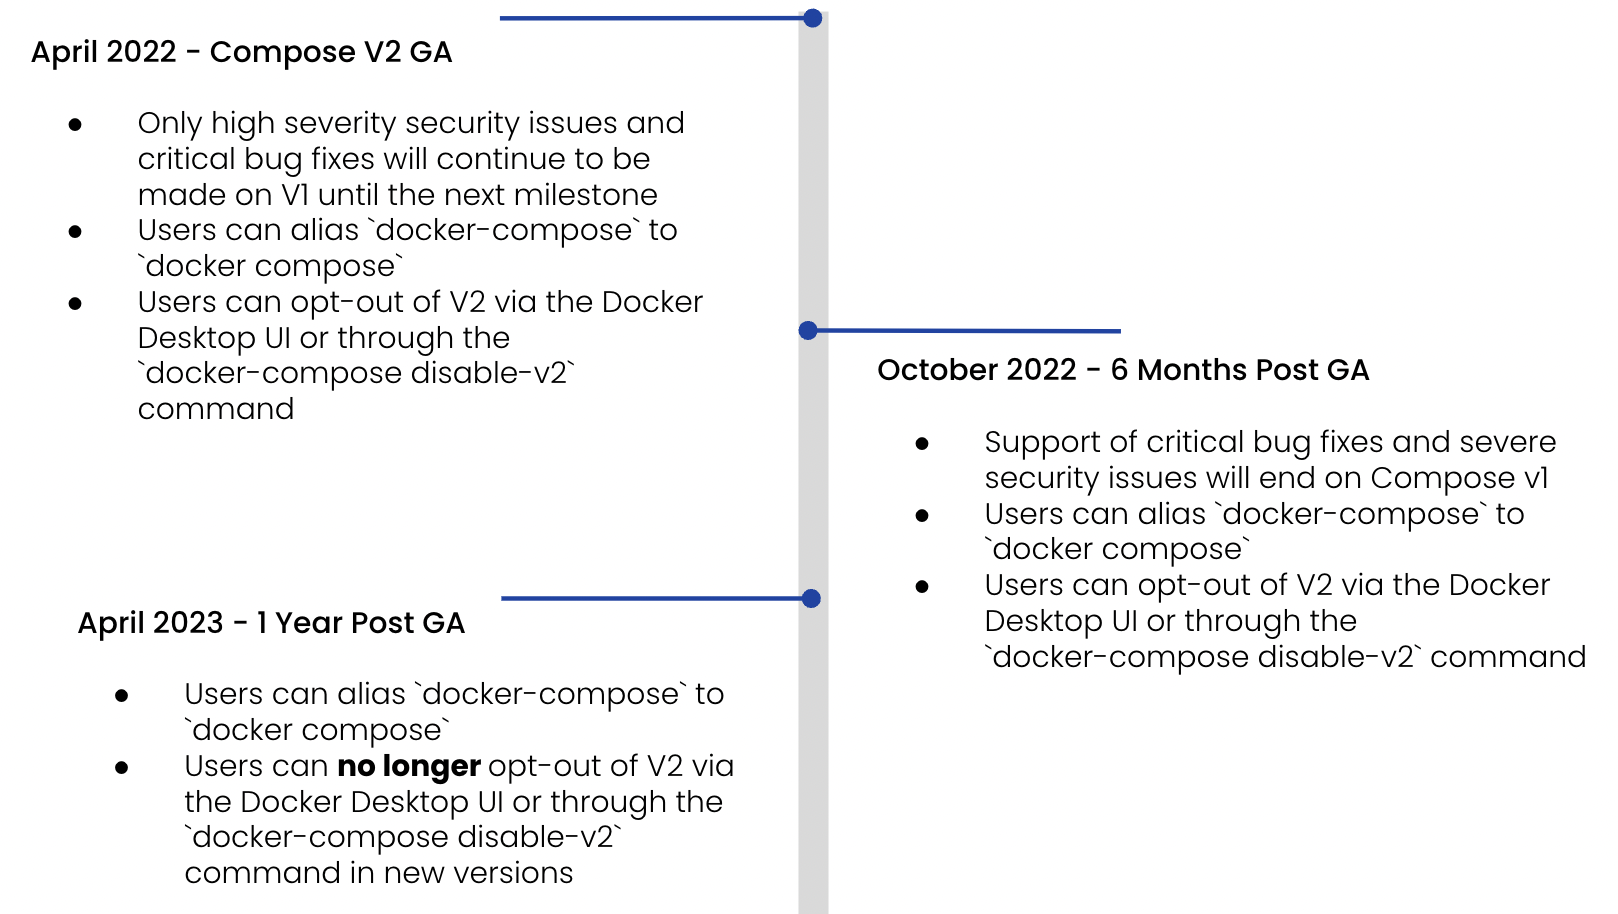 v1 のサポート終了タイムラインの作成: 2022 年 4 月、v2 GA を作成します。 重大度の高いセキュリティ問題と重大なバグ修正のみが、次のマイルストーンまで v1 で引き続き行われます。 ユーザーは、ドッカー作成をドッカー作成にエイリアスすることができます。 ユーザーは、docker デスクトップ UI または docker-compose disable-v2 コマンドを使用して v2 をオプトアウトできます。 2022 年 10 月、GA から 6 か月後。 重大なバグ修正と重大なセキュリティ問題のサポートは、compose v1 で終了します。 ユーザーは、ドッカー作成をドッカー作成にエイリアスすることができます。 ユーザーは、docker デスクトップ UI または docker-compose disable-v2 コマンドを使用して v2 をオプトアウトできます。 2023年4月、GAから1年後。 ユーザーは、ドッカー作成をドッカー作成にエイリアスすることができます。 ユーザーは、新しいバージョンでは、ドッカー デスクトップ UI または docker-compose disable-v2 コマンドを使用して v2 をオプトアウトできなくなりました。